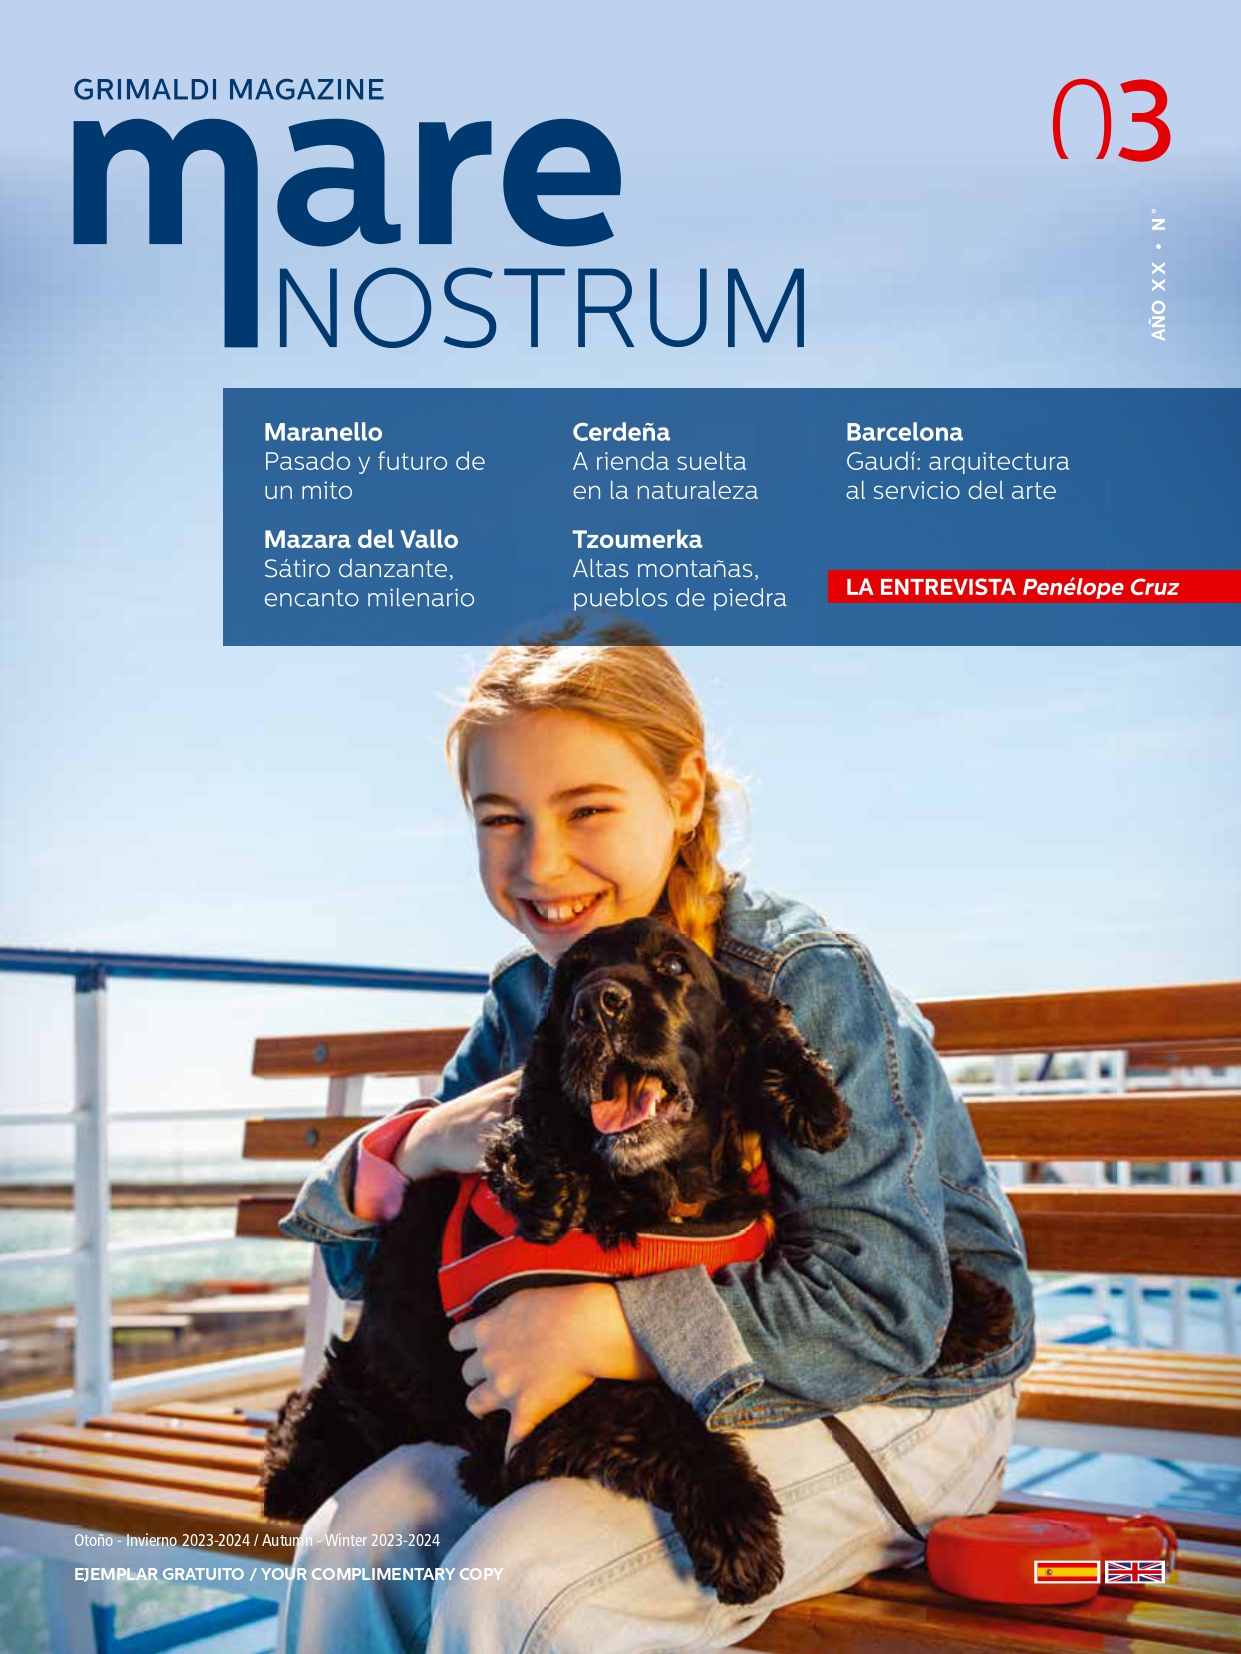 Grimaldi Magazine Mare Nostrum (Year XX n. 3) Spanish-English